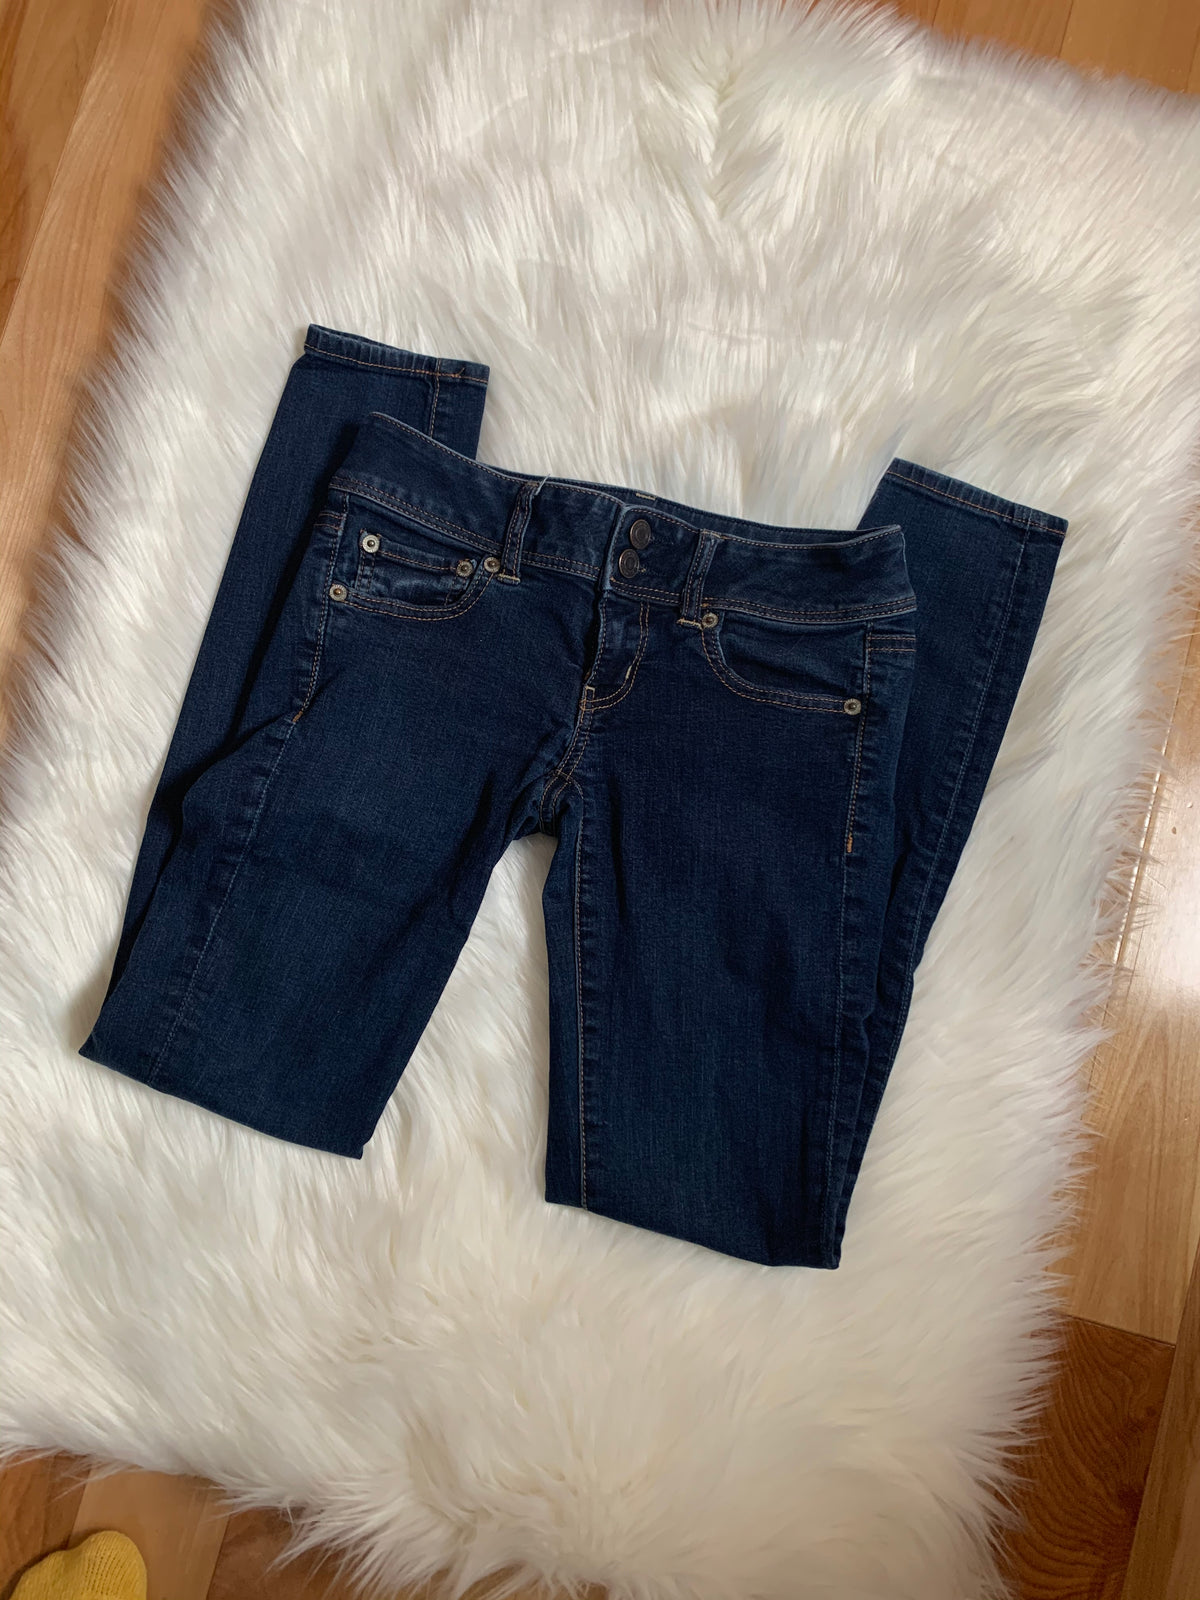 Jeans (Women&#39;s size 0)